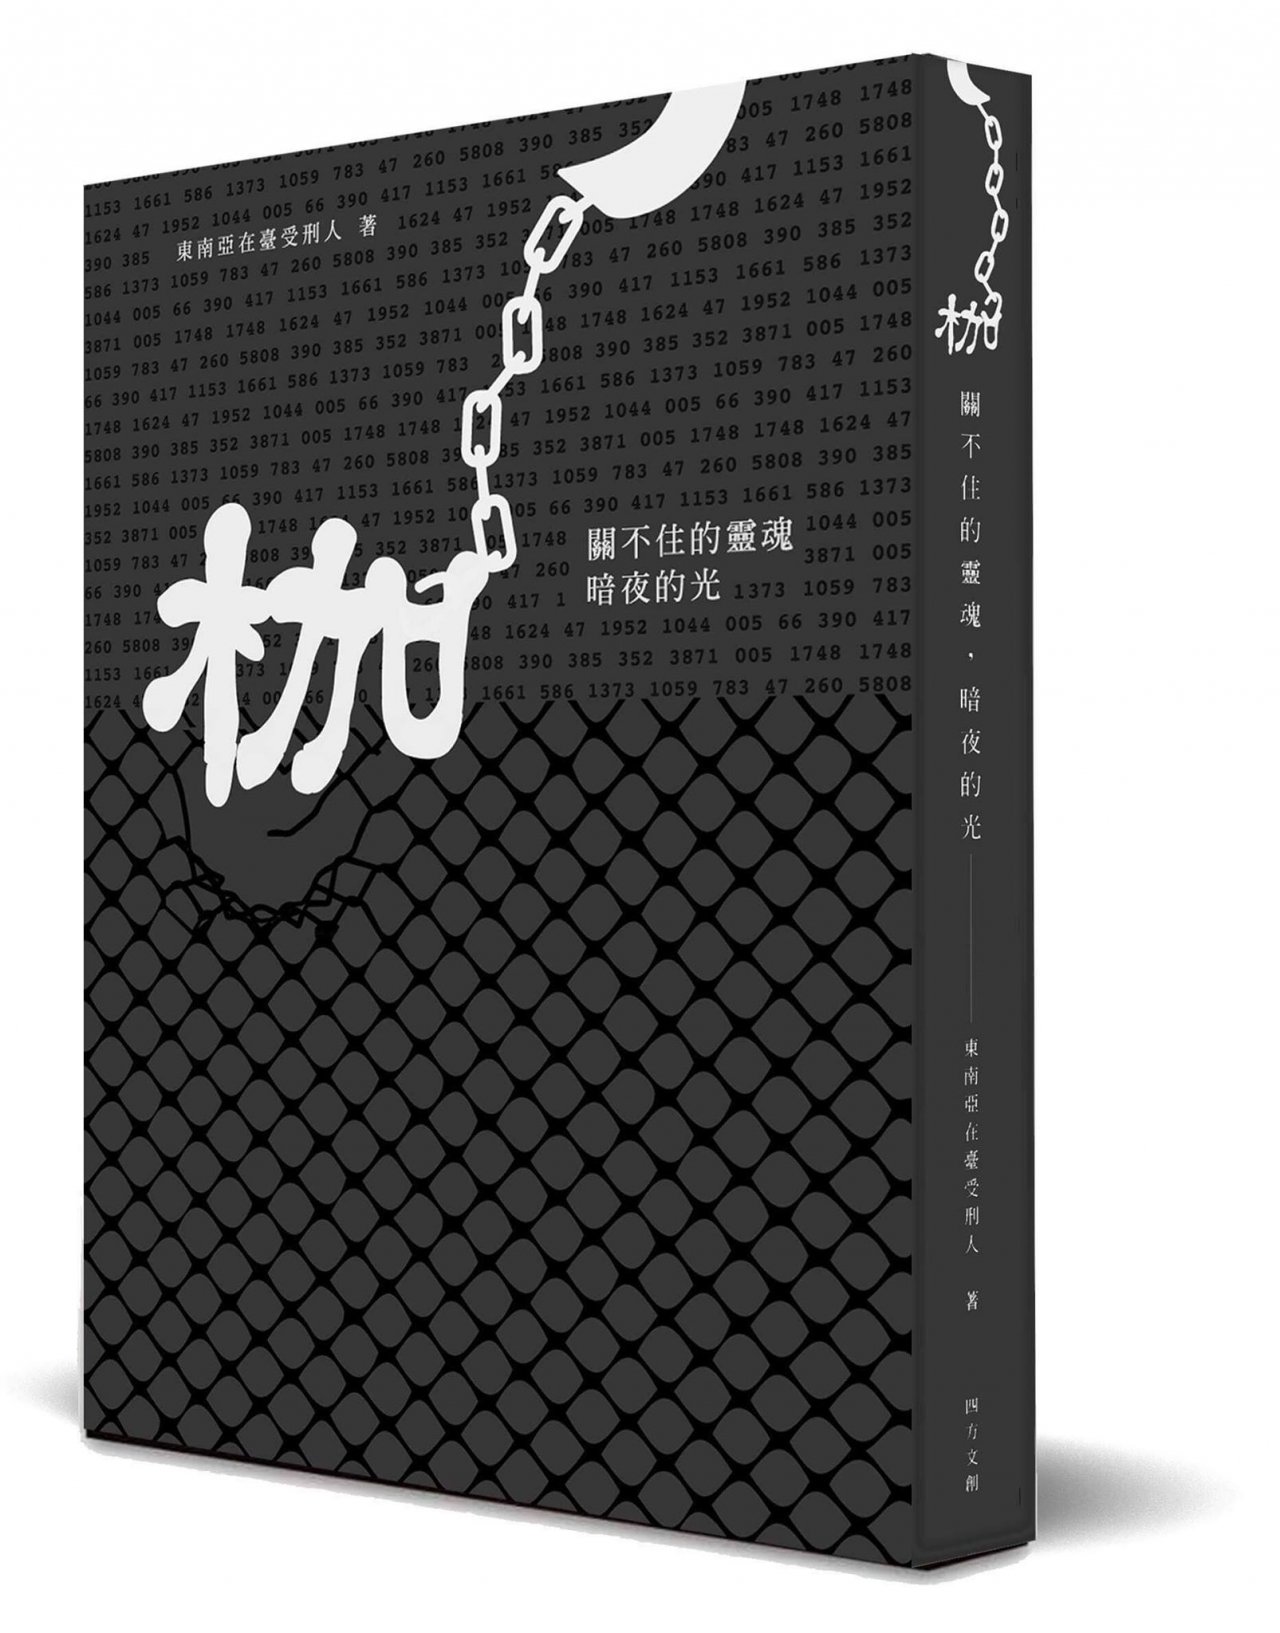 「枷」新書出版 傳遞東南亞在台受刑人心聲